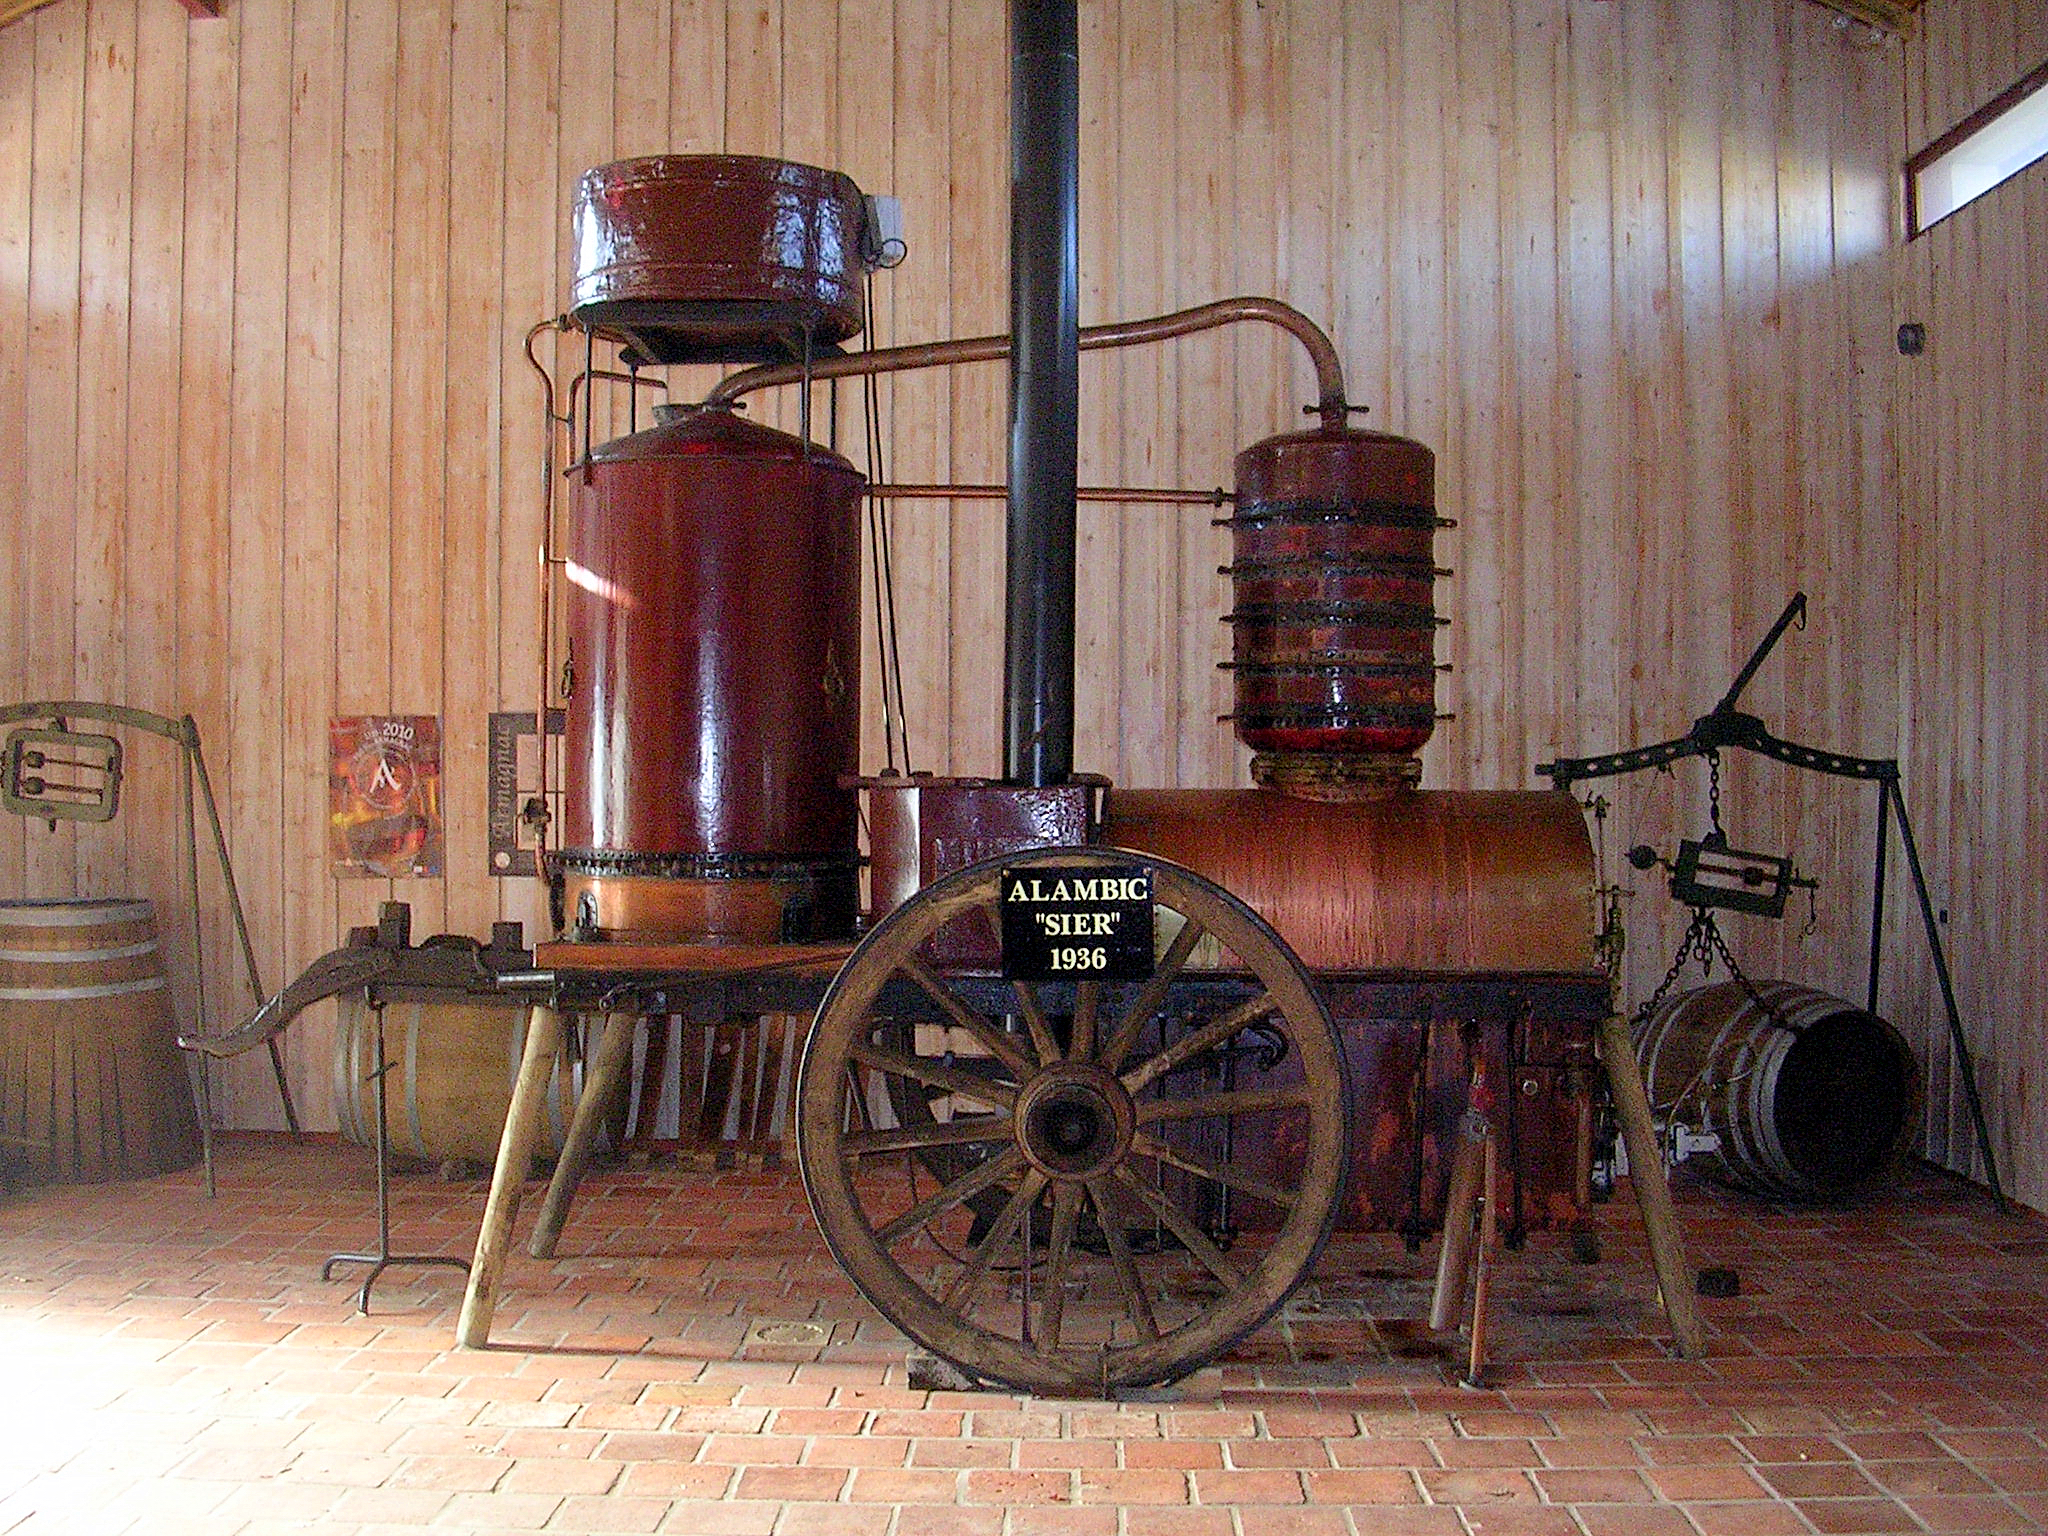 Аппарат для дистилляции арманьяка называется аламбик, причем самый известный аламбик «Сьер» (1936) похож на паровозик. Источник https://upload.wikimedia.org/